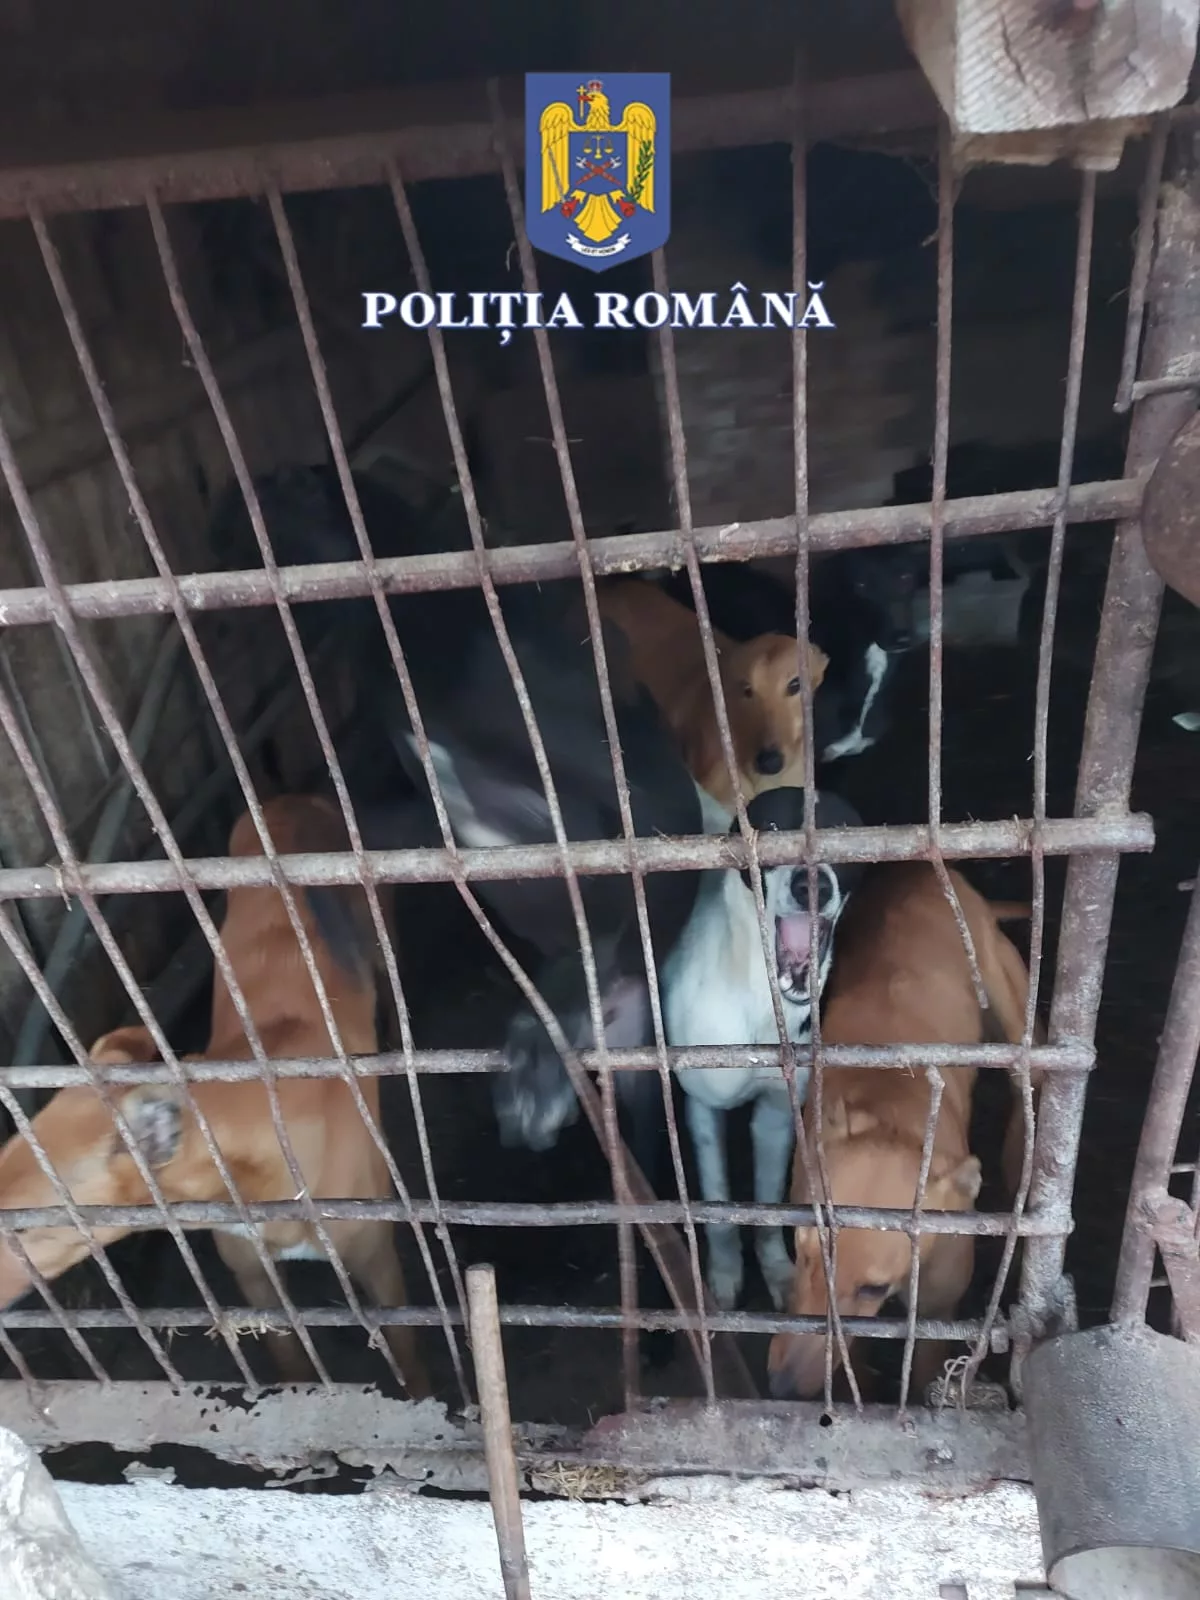 25 de câini din rasa ogar au fost încredințați asociațiilor de vânătoare care gestionează fondurile cinegetice vizate